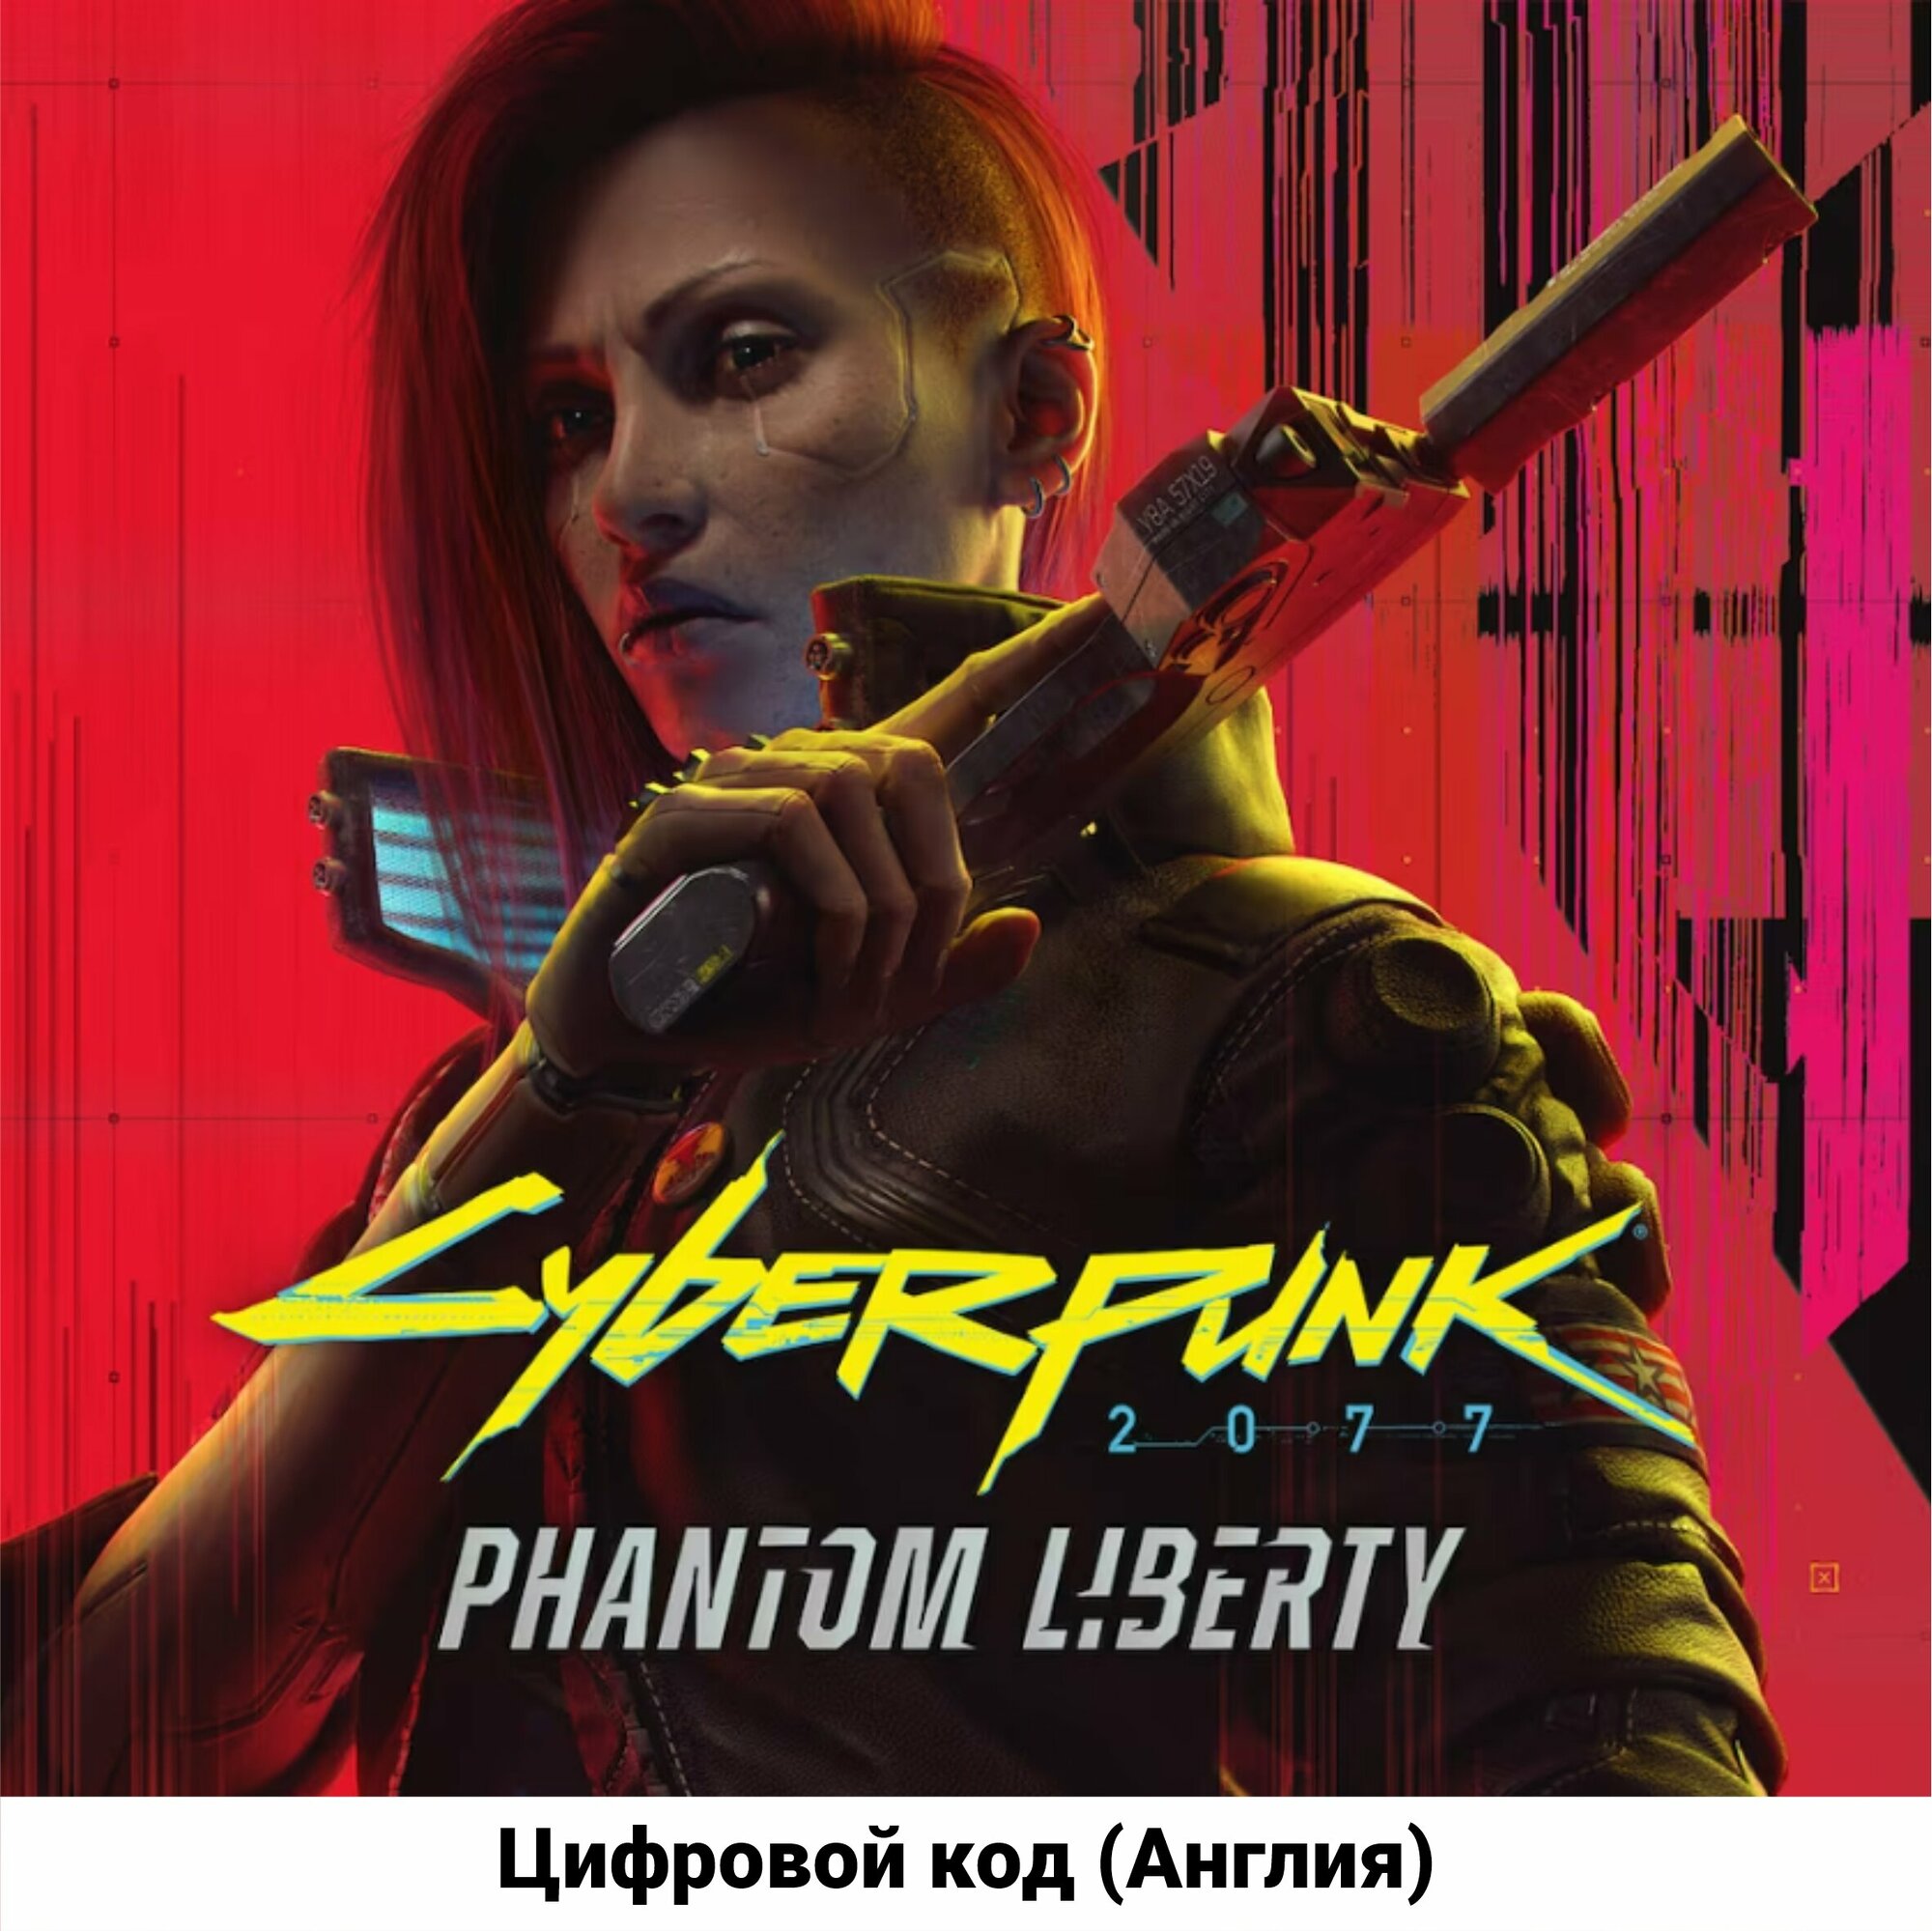 Cyberpunk 2077 Phantom Liberty add-on на PS5 (русская озвучка) (Цифровой код, Англия)